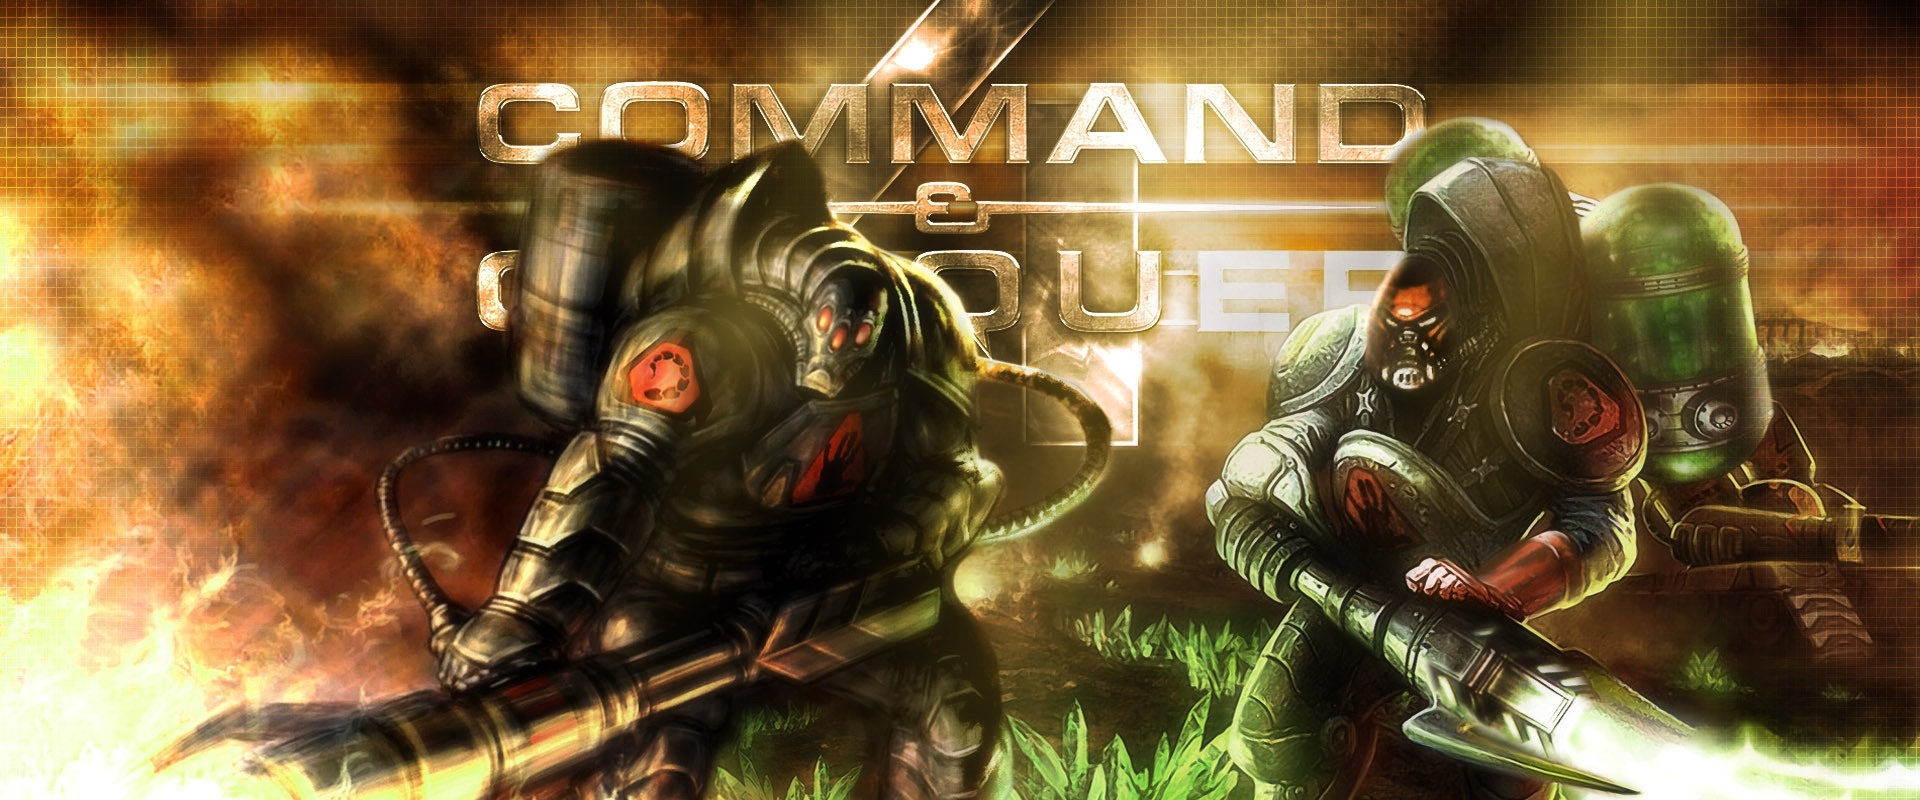 Több remastered Command and Conquerre is számíthatunk a jövőben az EA-től!